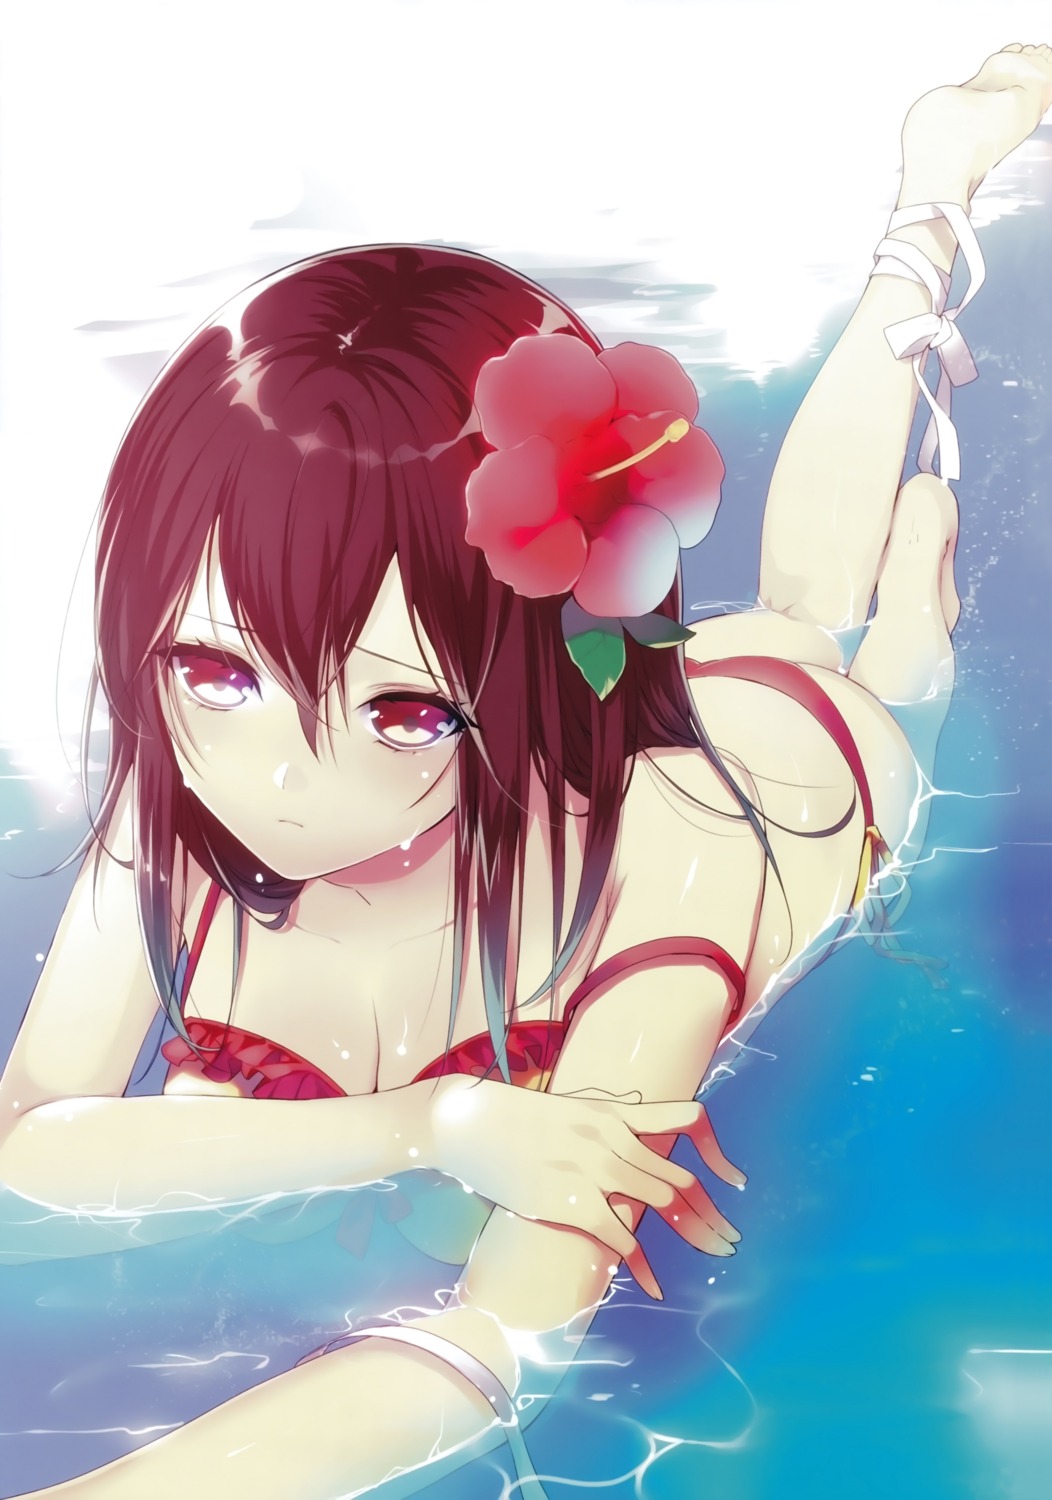 bikini cleavage himeragi_yukina manyako strike_the_blood swimsuits wet